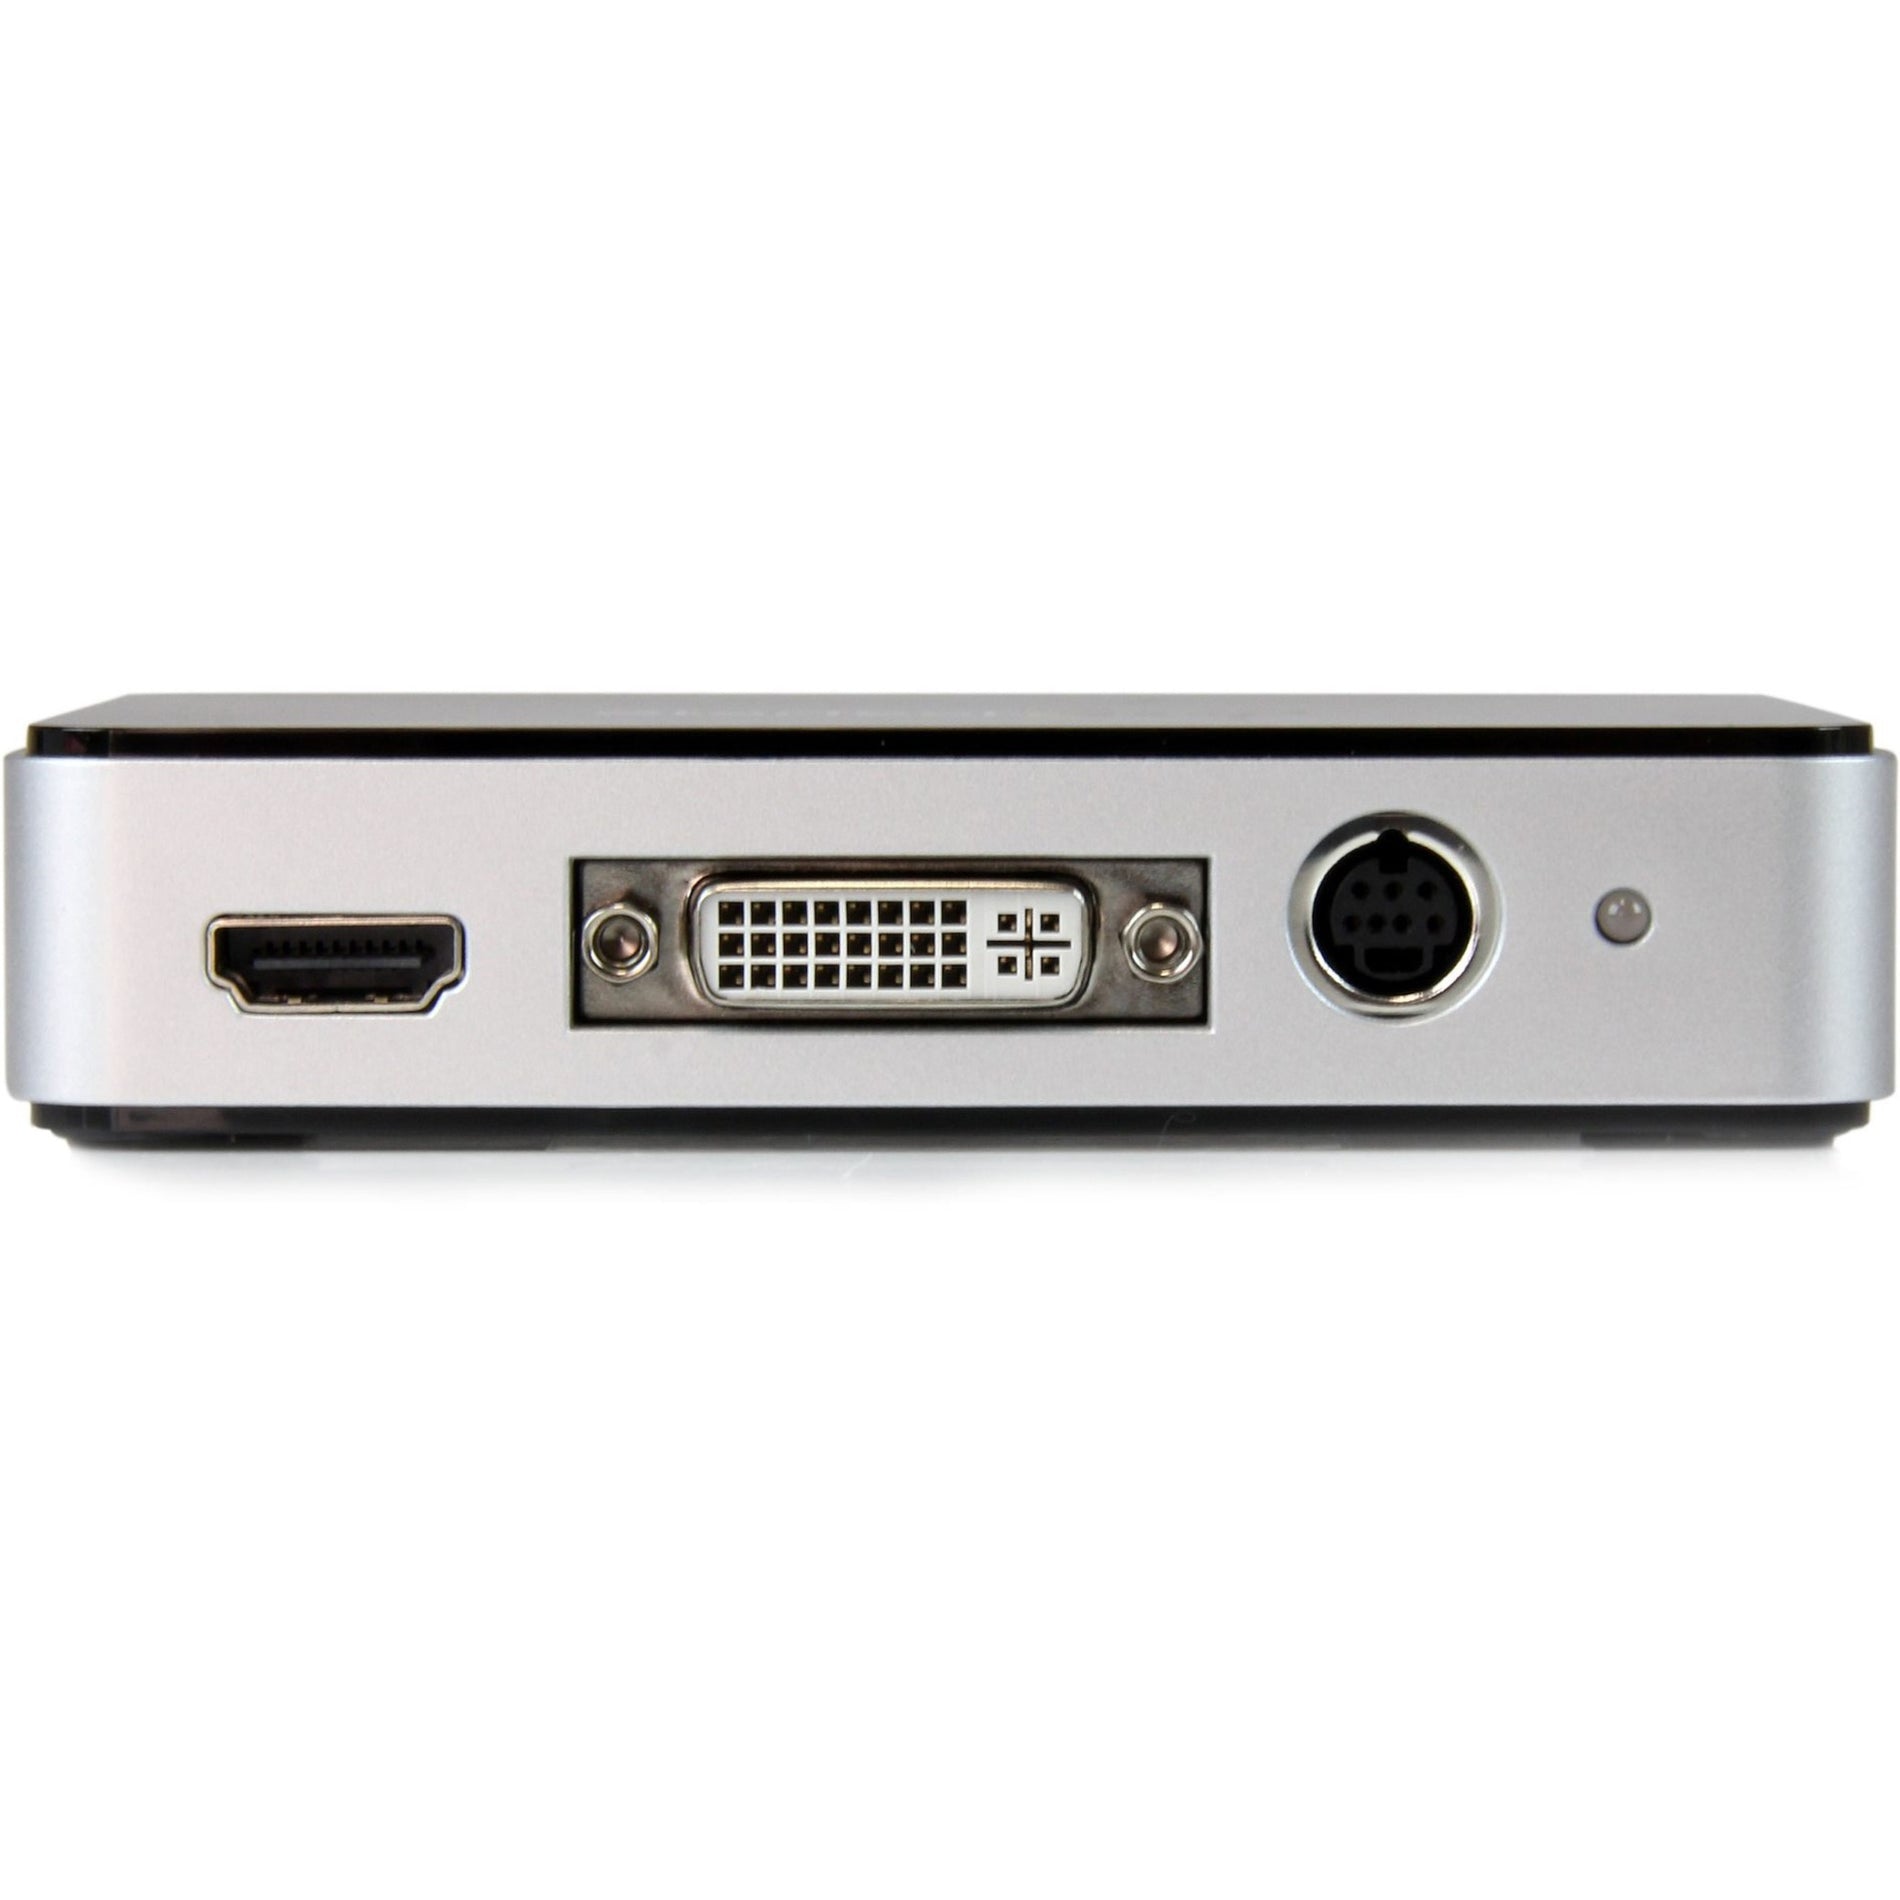 StarTech.com USB3HDCAP USB 3.0 Video Capture Device - HDMI / DVI / VGA / Component HD Video Recorder - 1080p 60fps